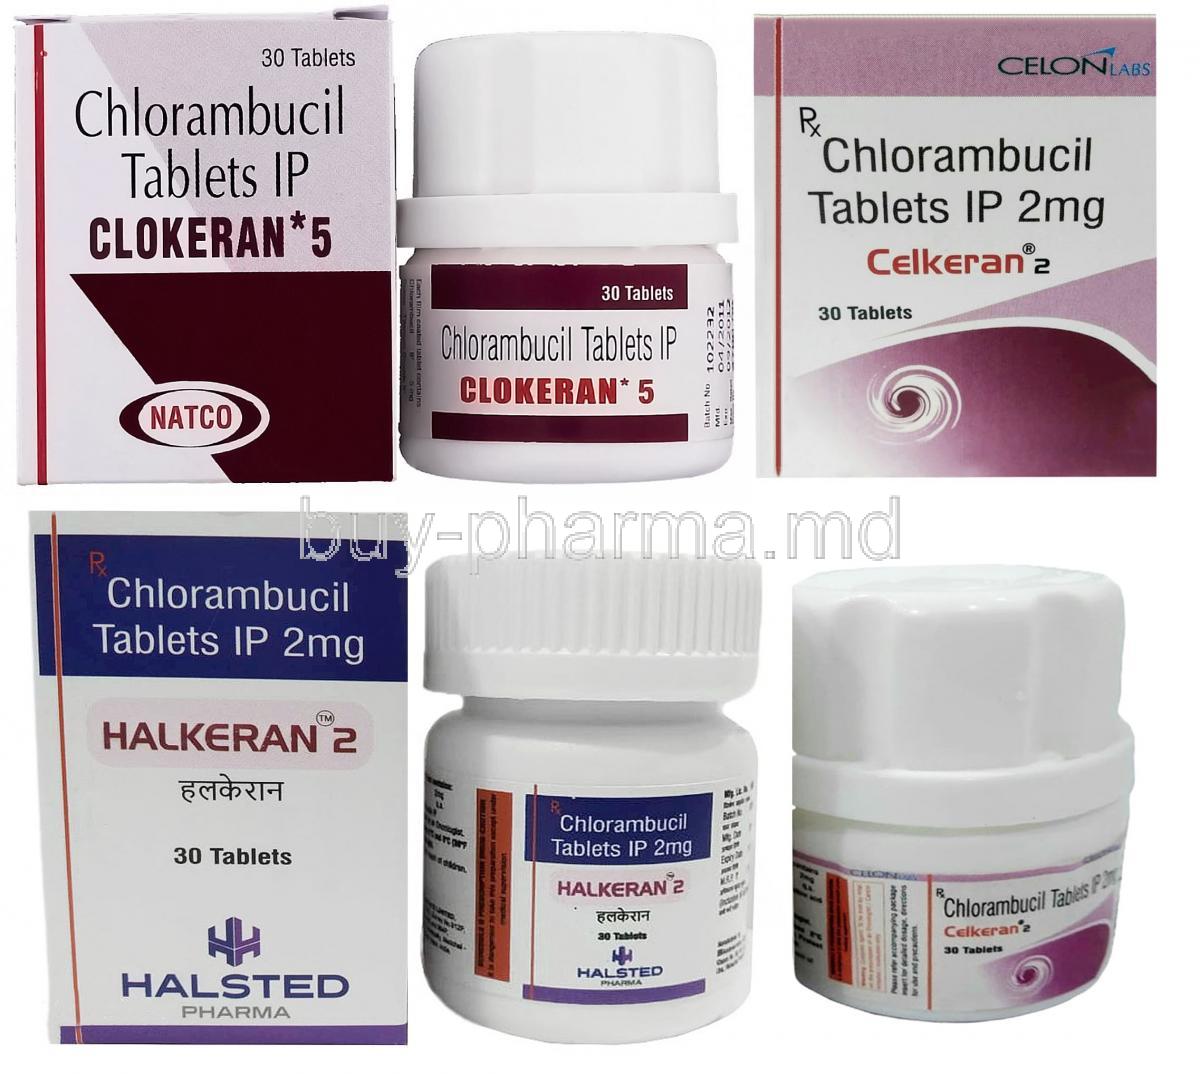 Chlorambucil 2mg, Products Lineup